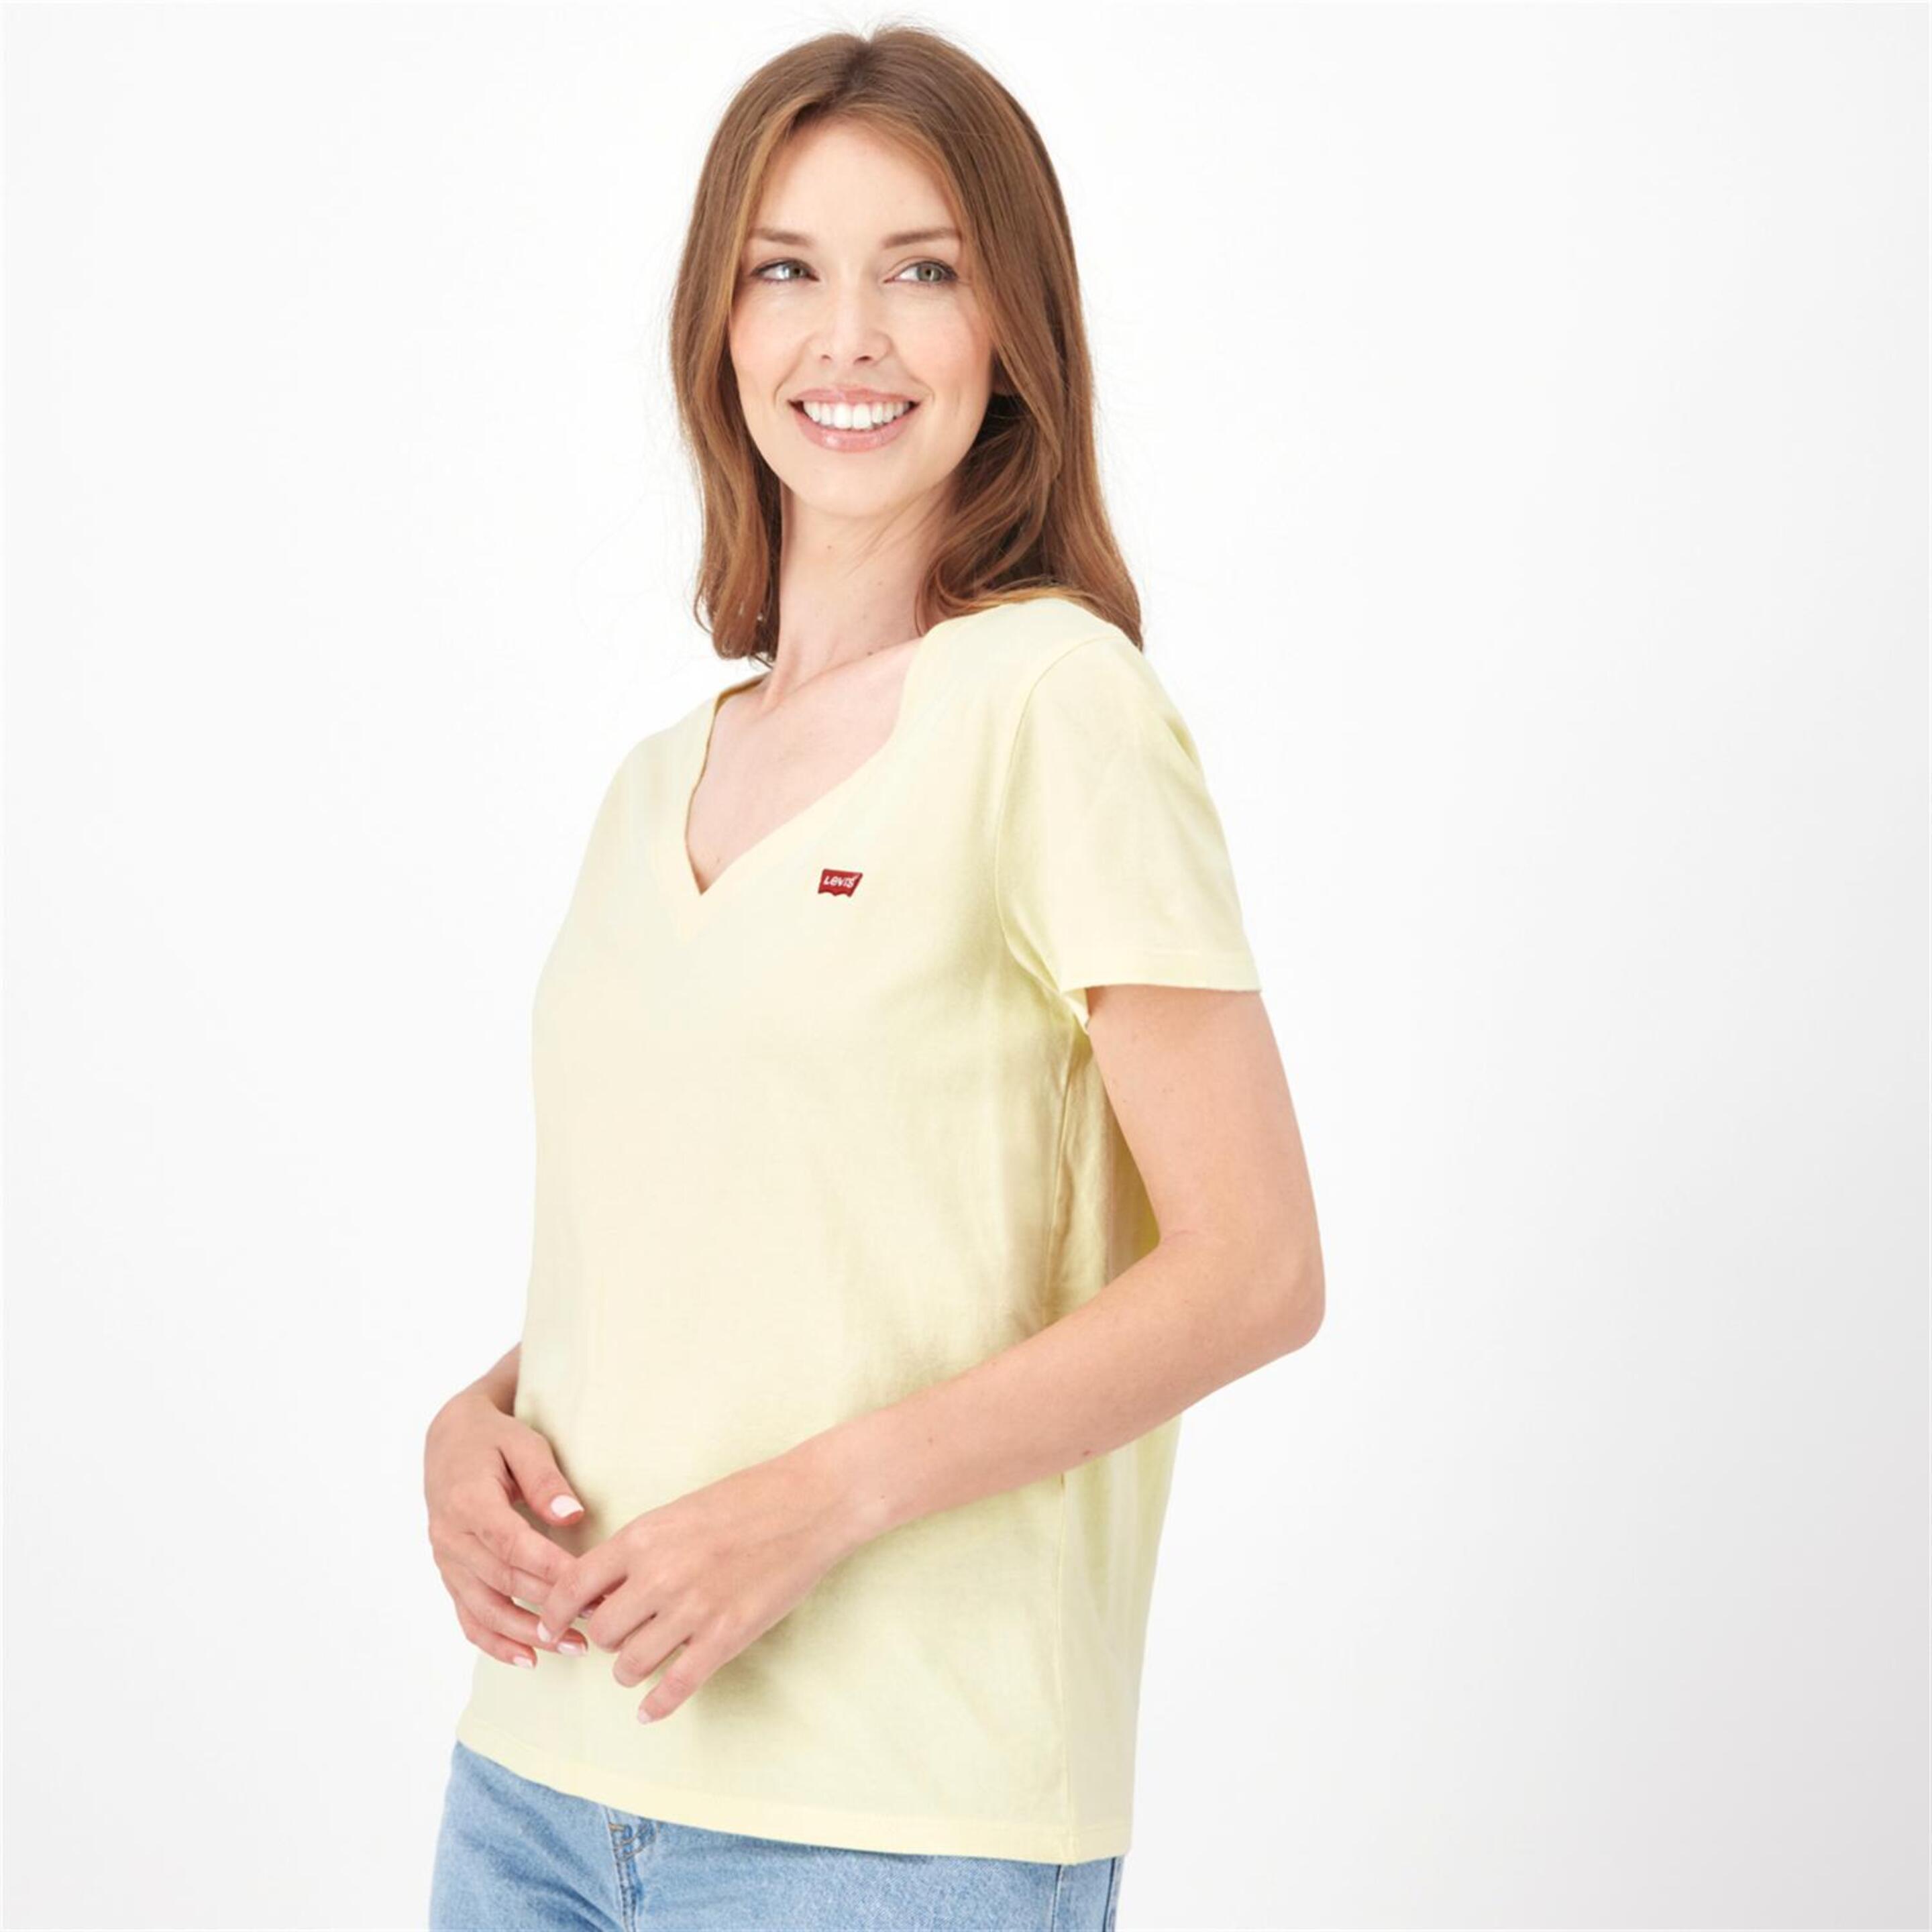 Camiseta Levi's - Amarillo - Camiseta Cuello Pico Mujer